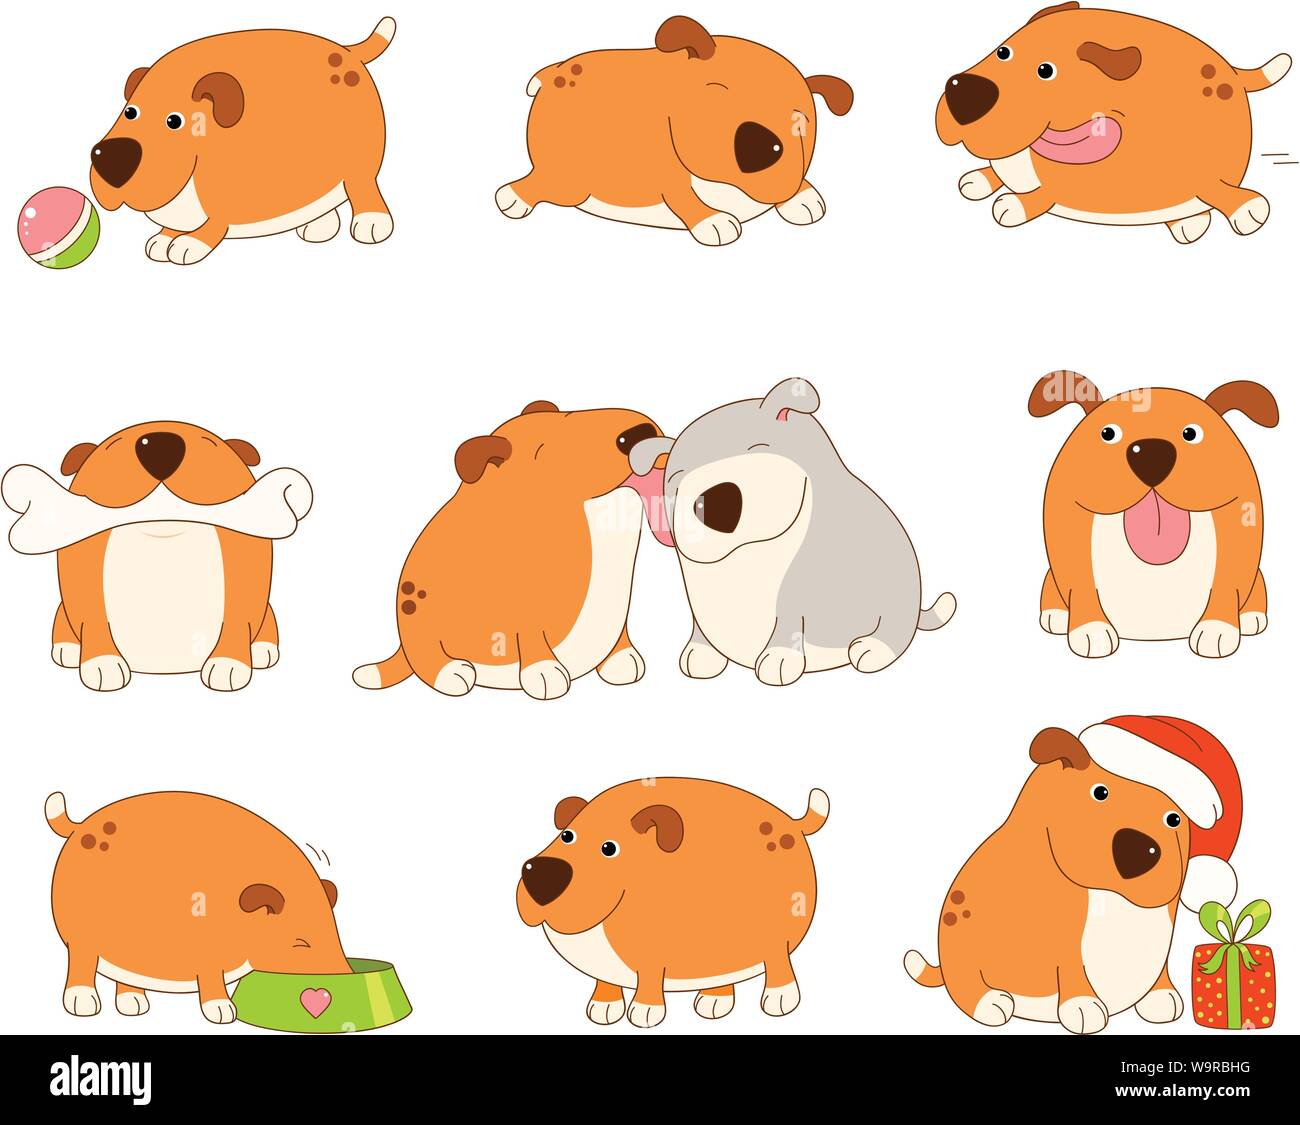 Jeu de cute le chien rouge dans le style kawaii. Drôle, heureux, rire, jouer, dormir, manger, courir, avec l'os, avec un ami. Spe8 Illustration de Vecteur